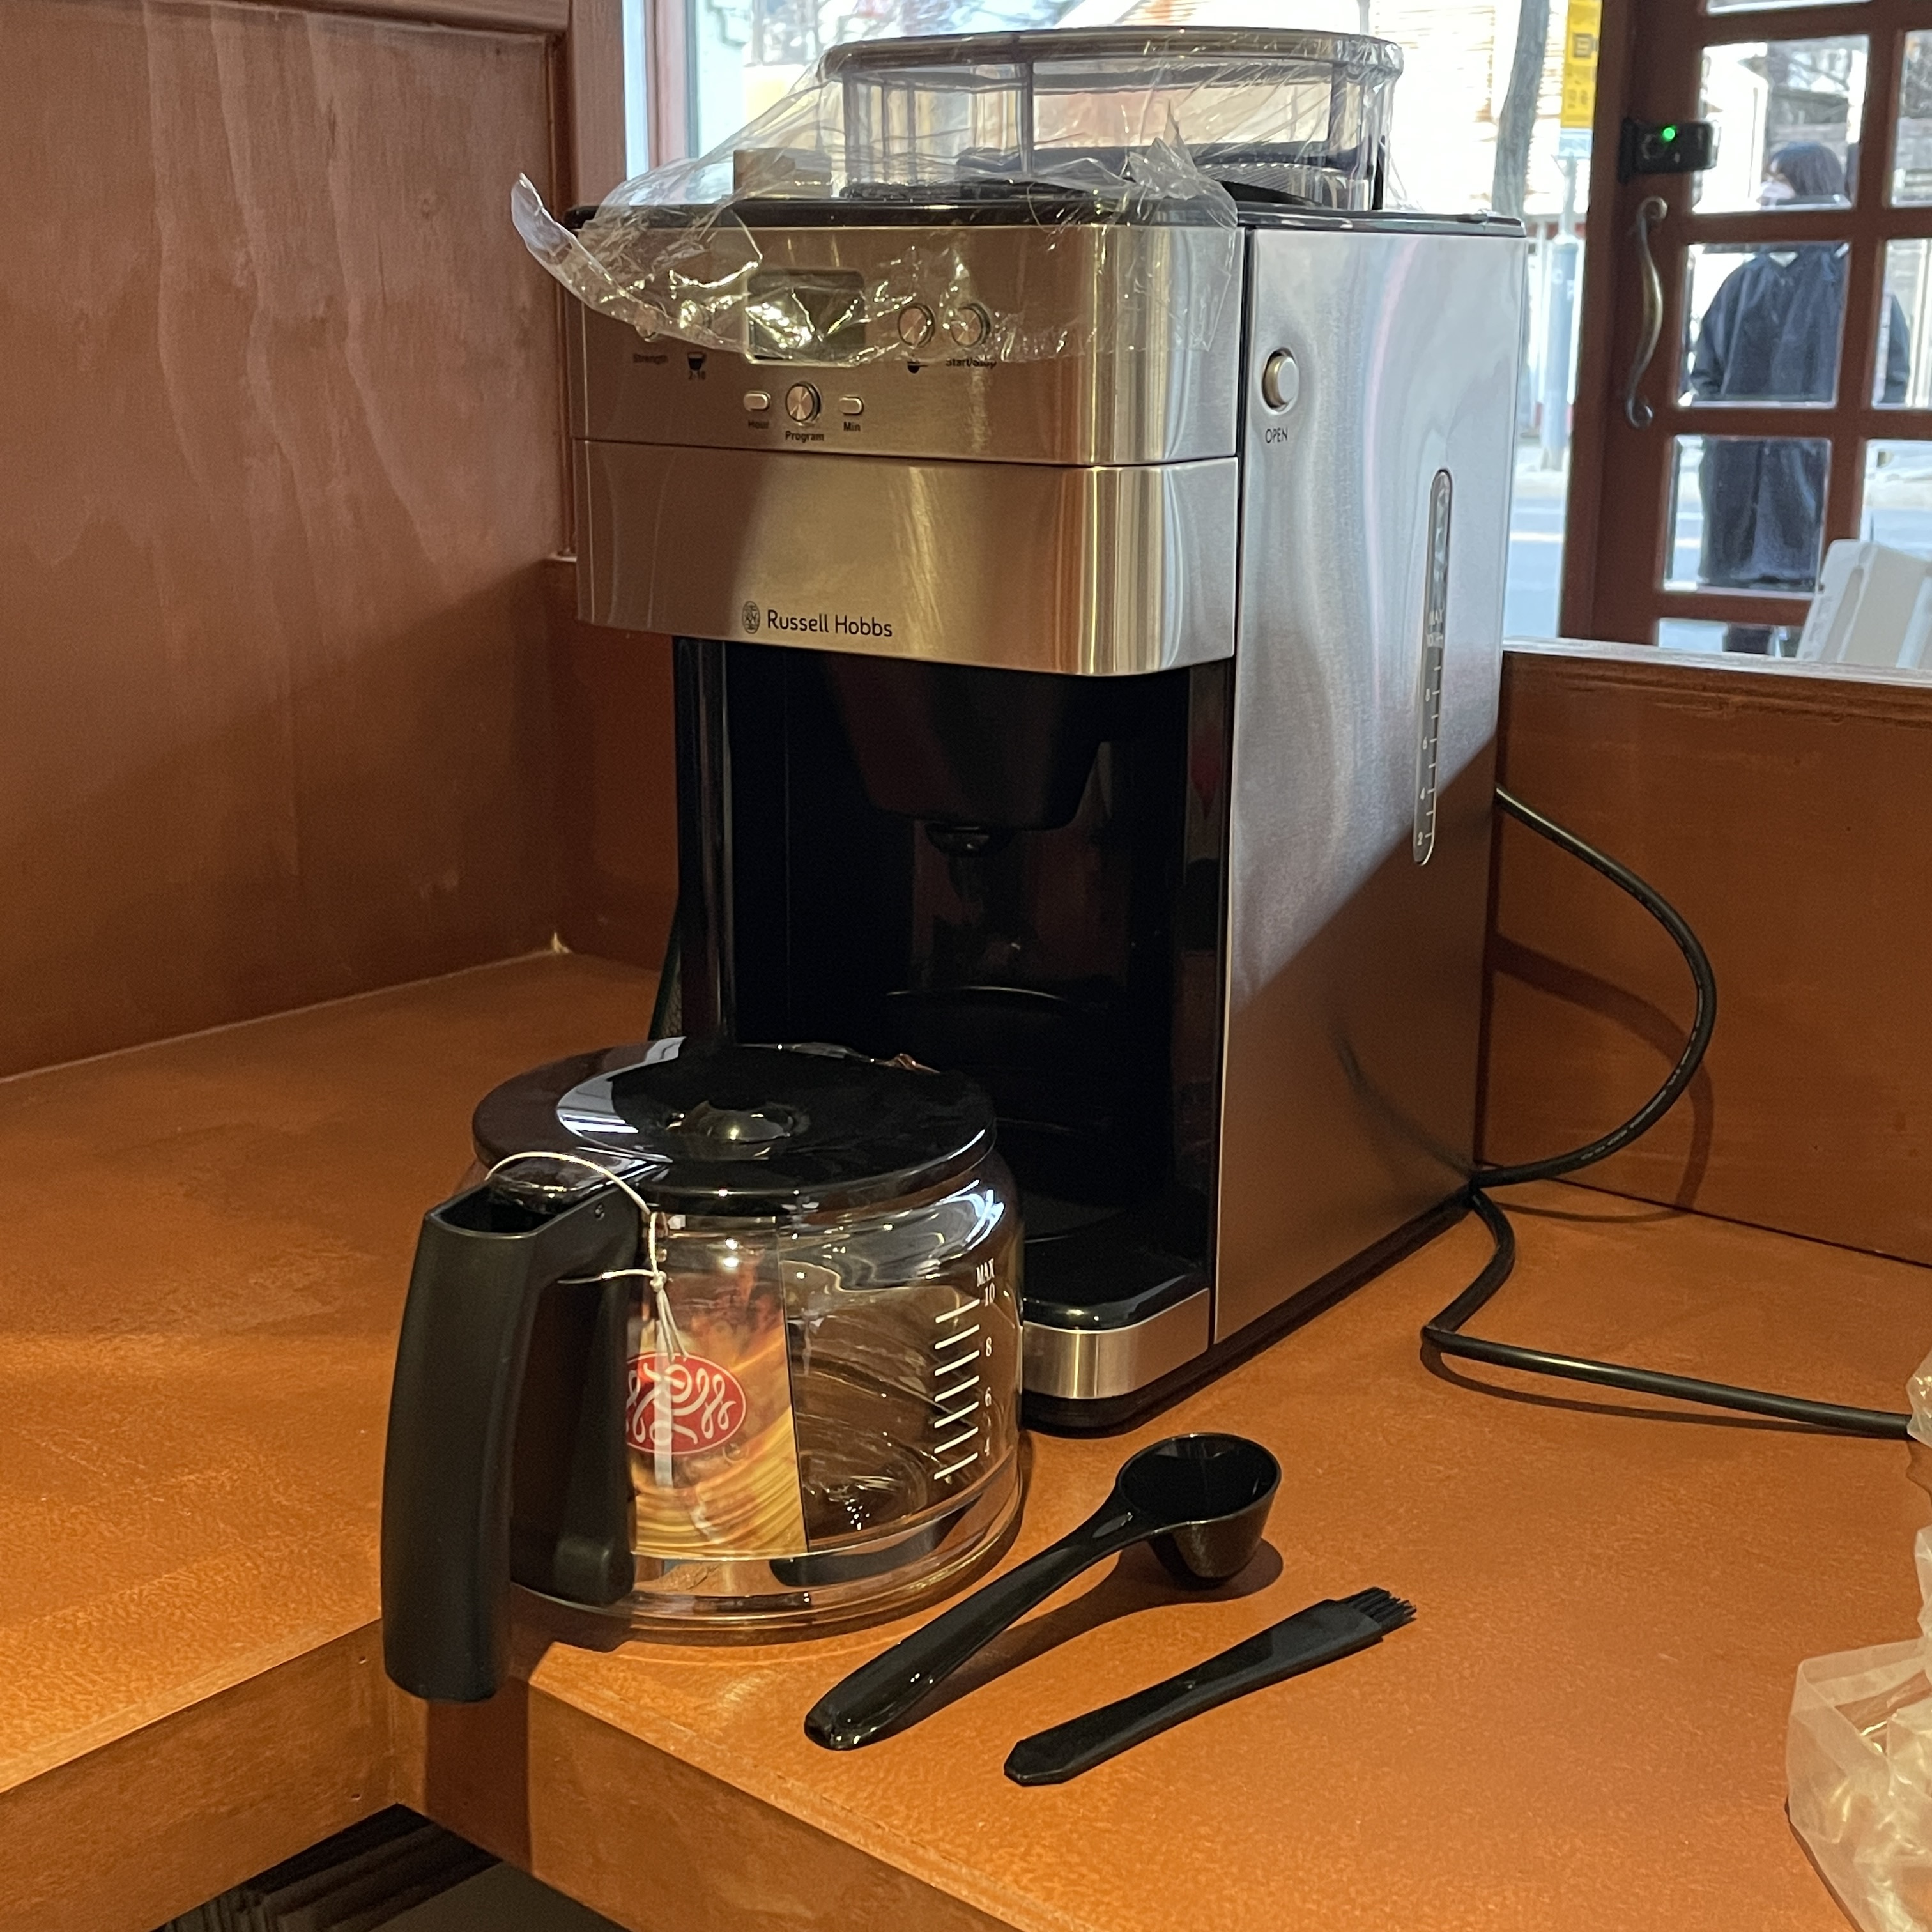 전자동 커피 머신 러셀홉스